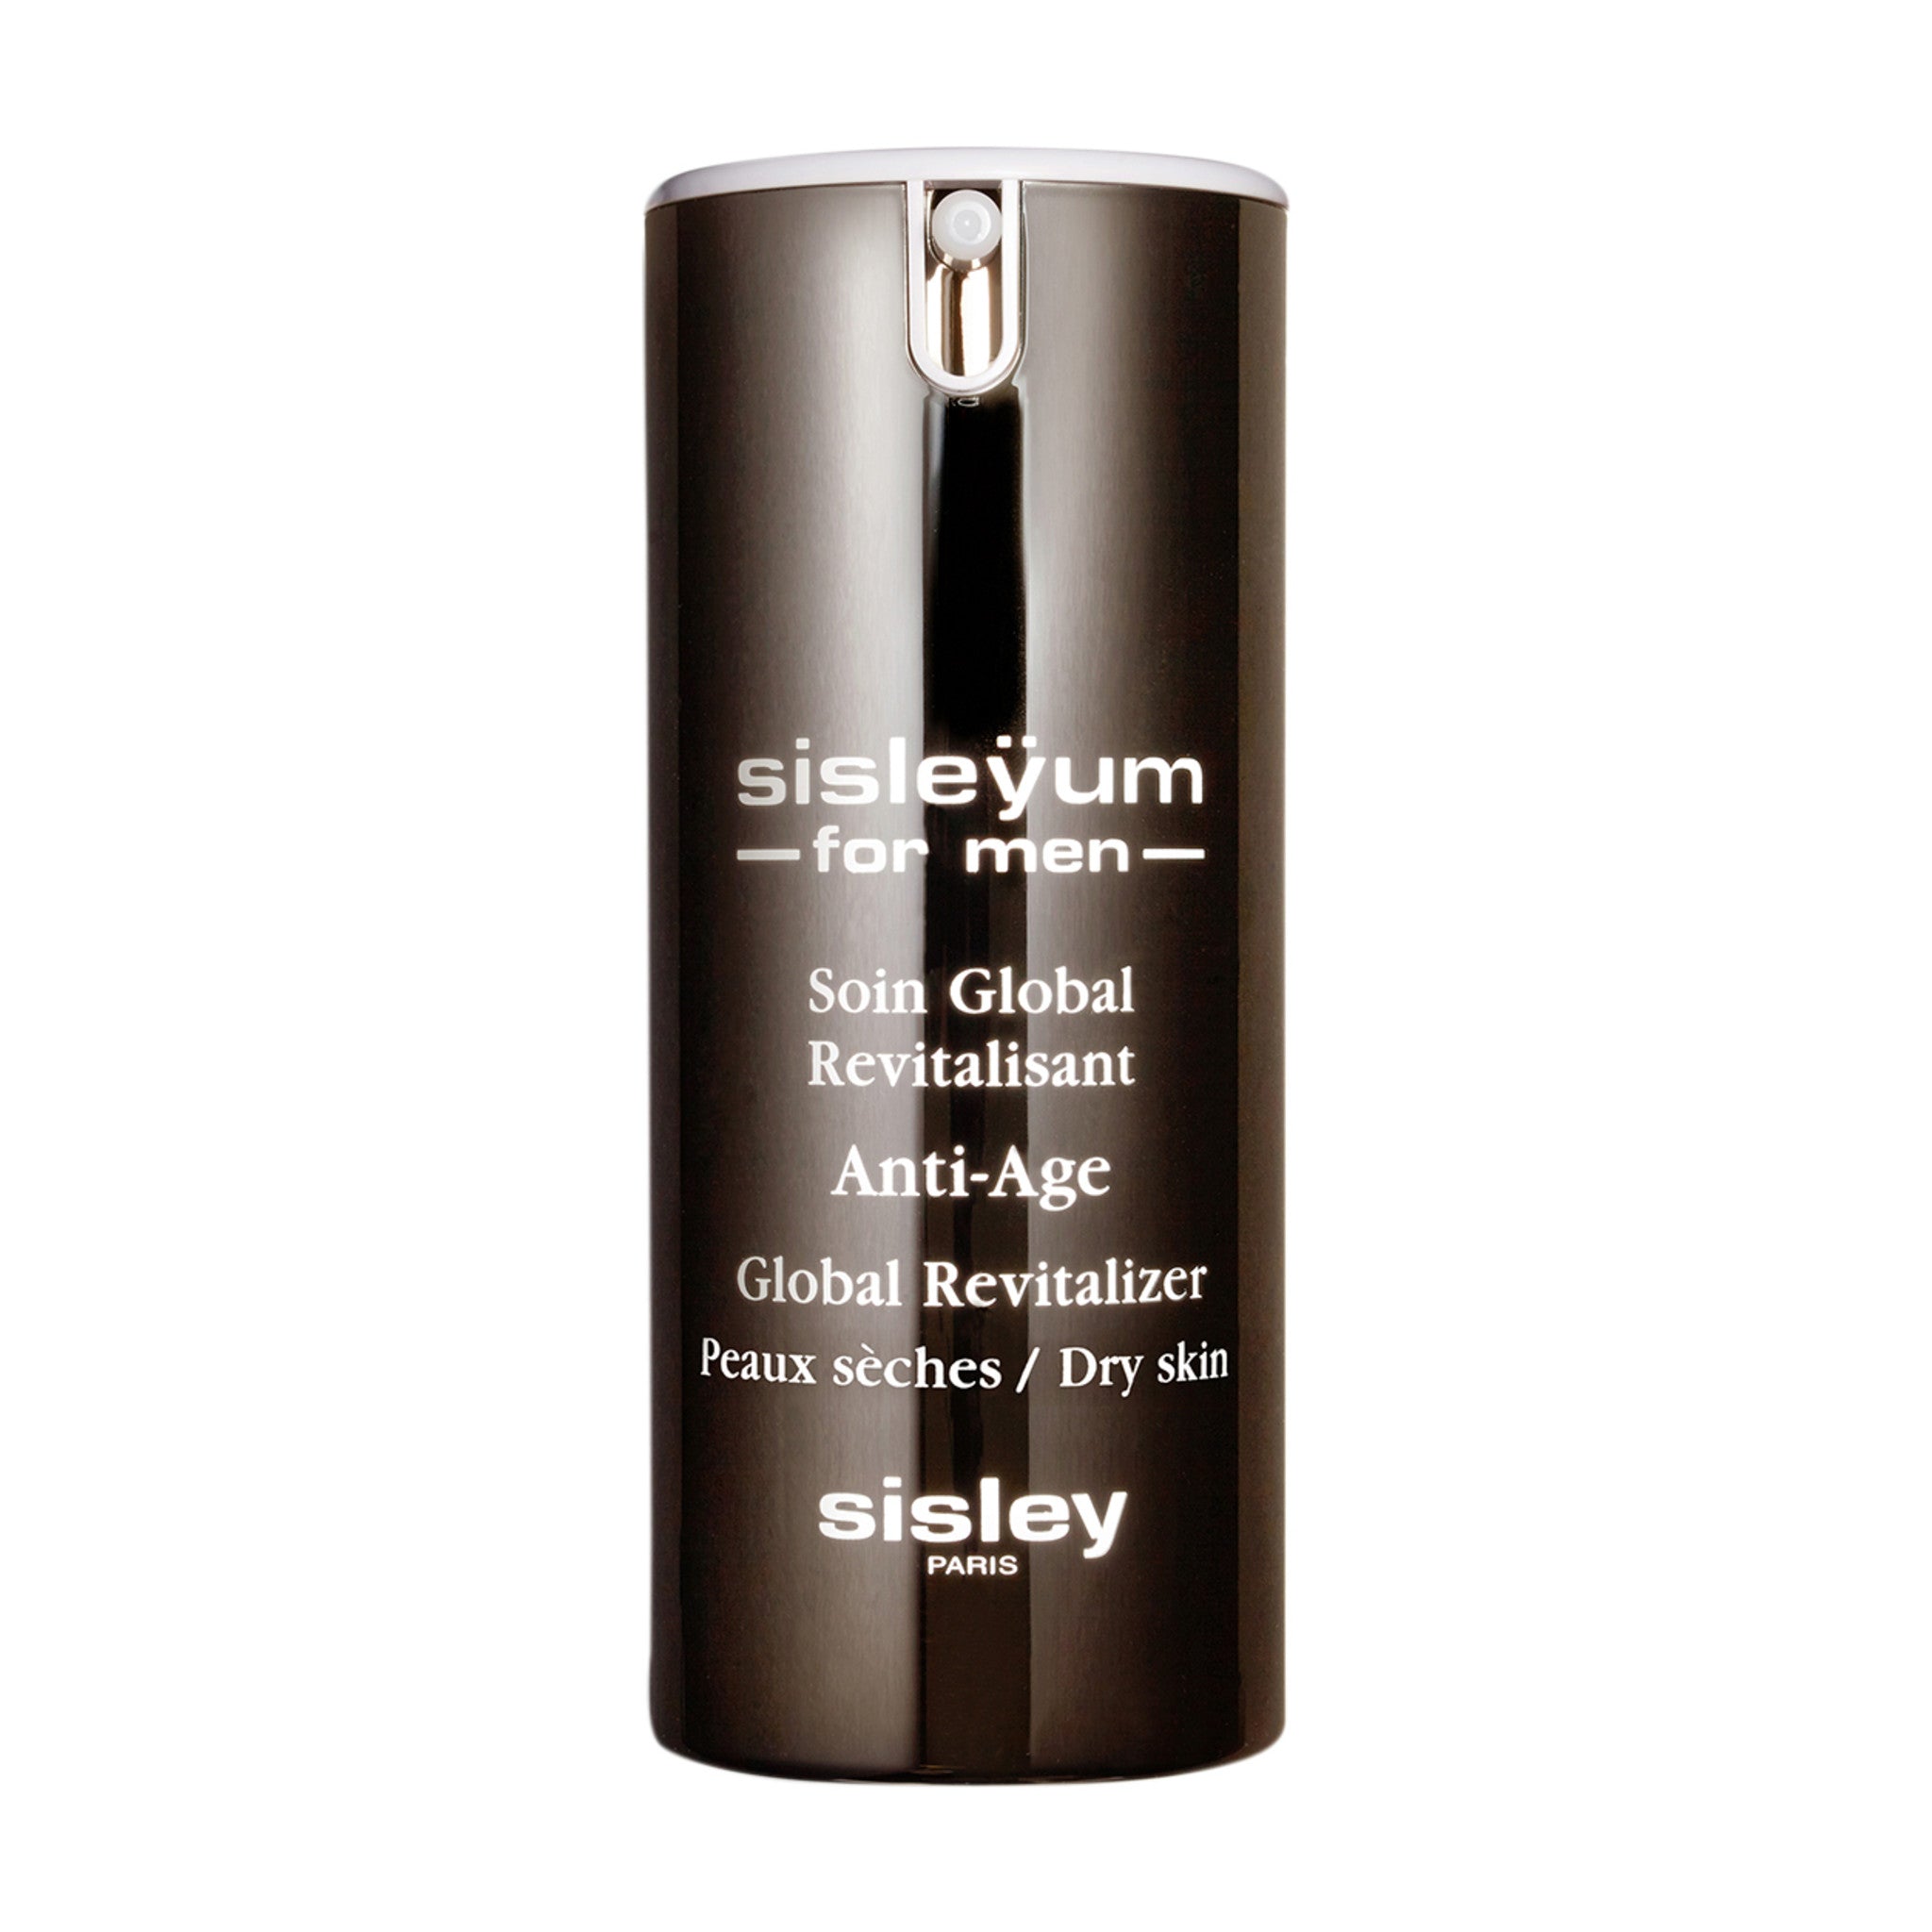 Sisley-Paris Sisleÿum for Men Dry main image.